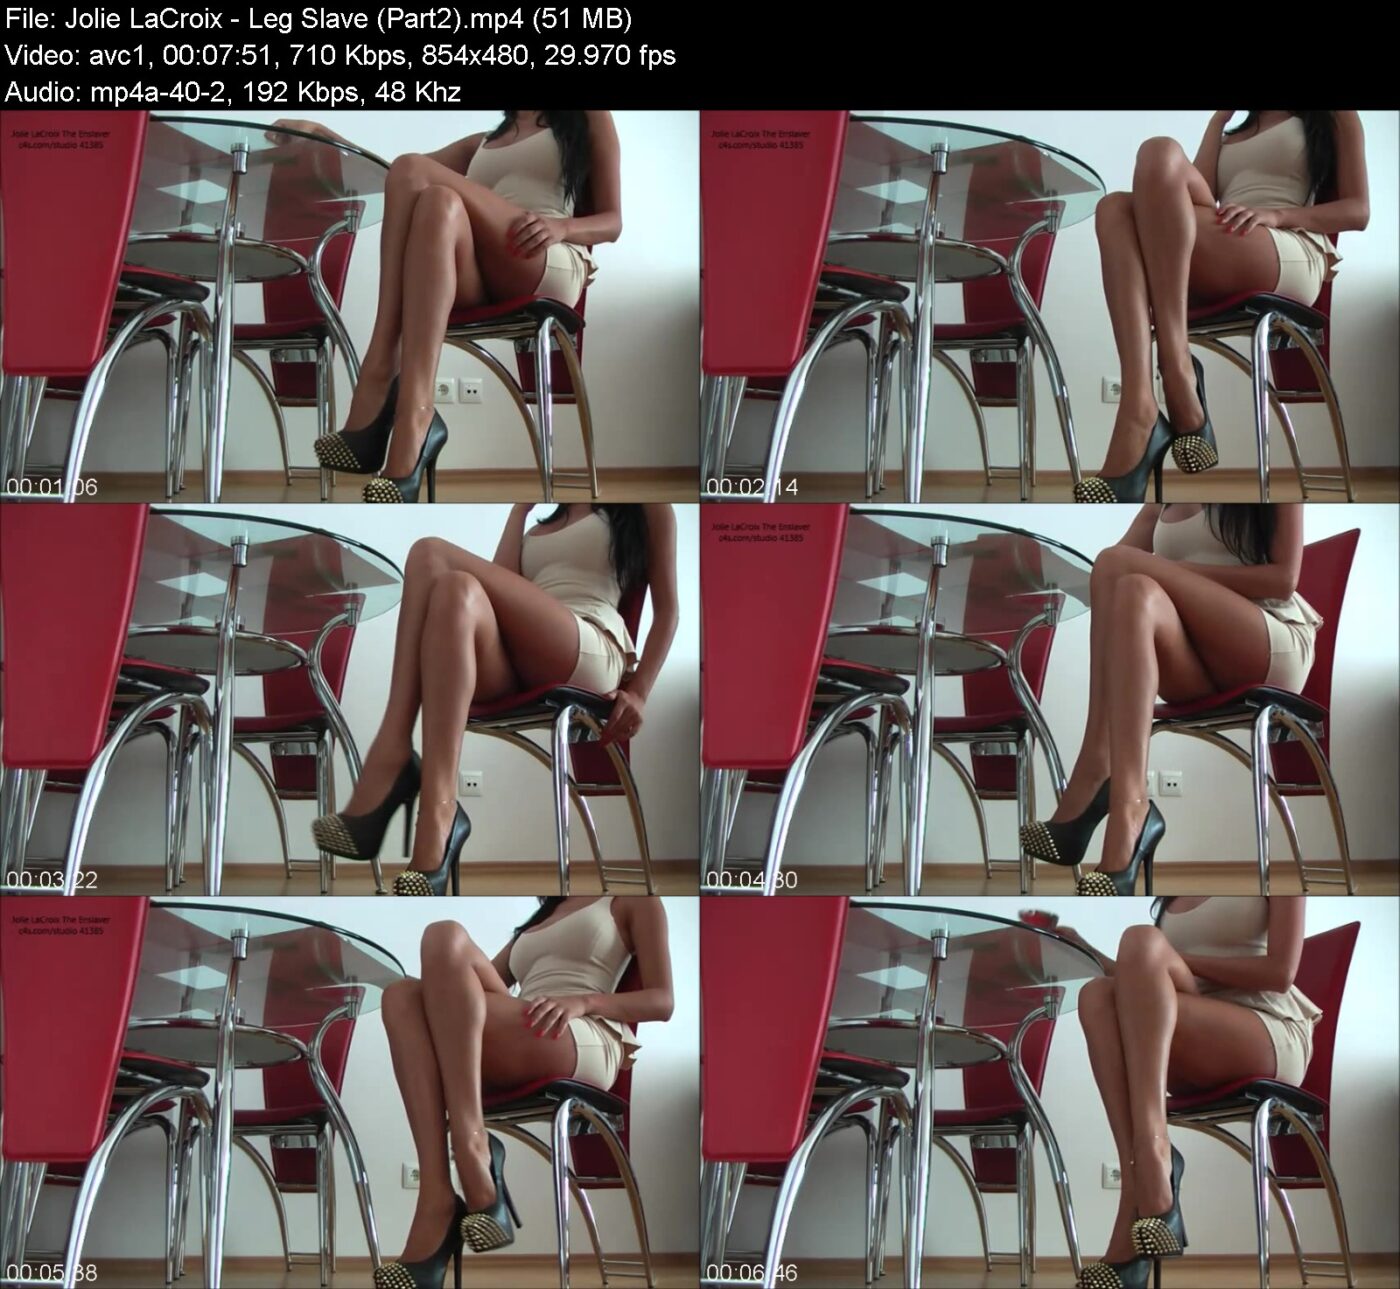 Jolie LaCroix - Leg Slave (Part2)